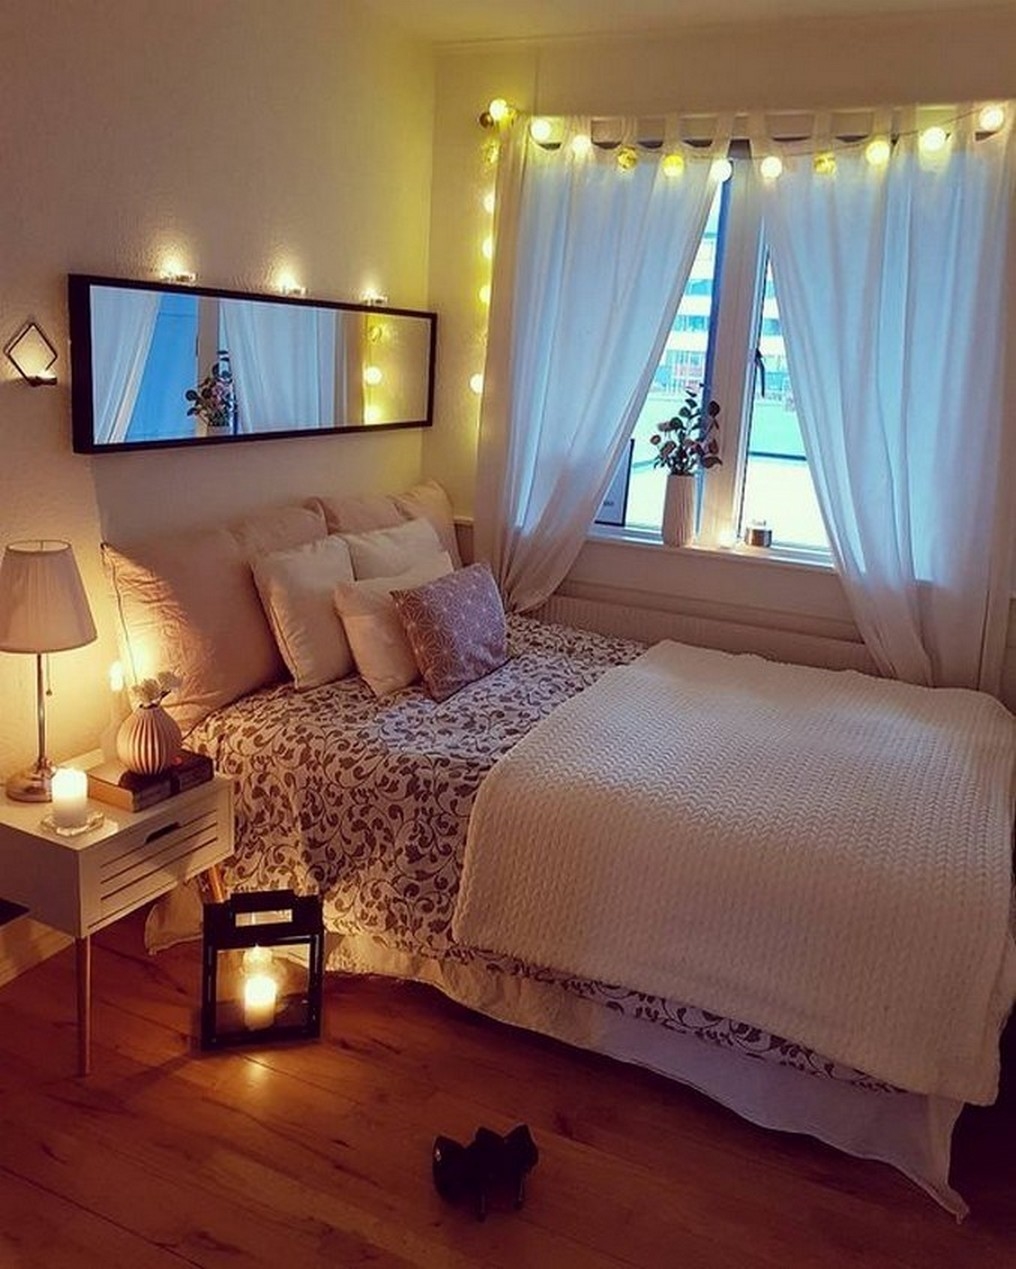 Уютная спальня (120 фото) - лучшие идеи красивого и необычного оформления дизайна спальни